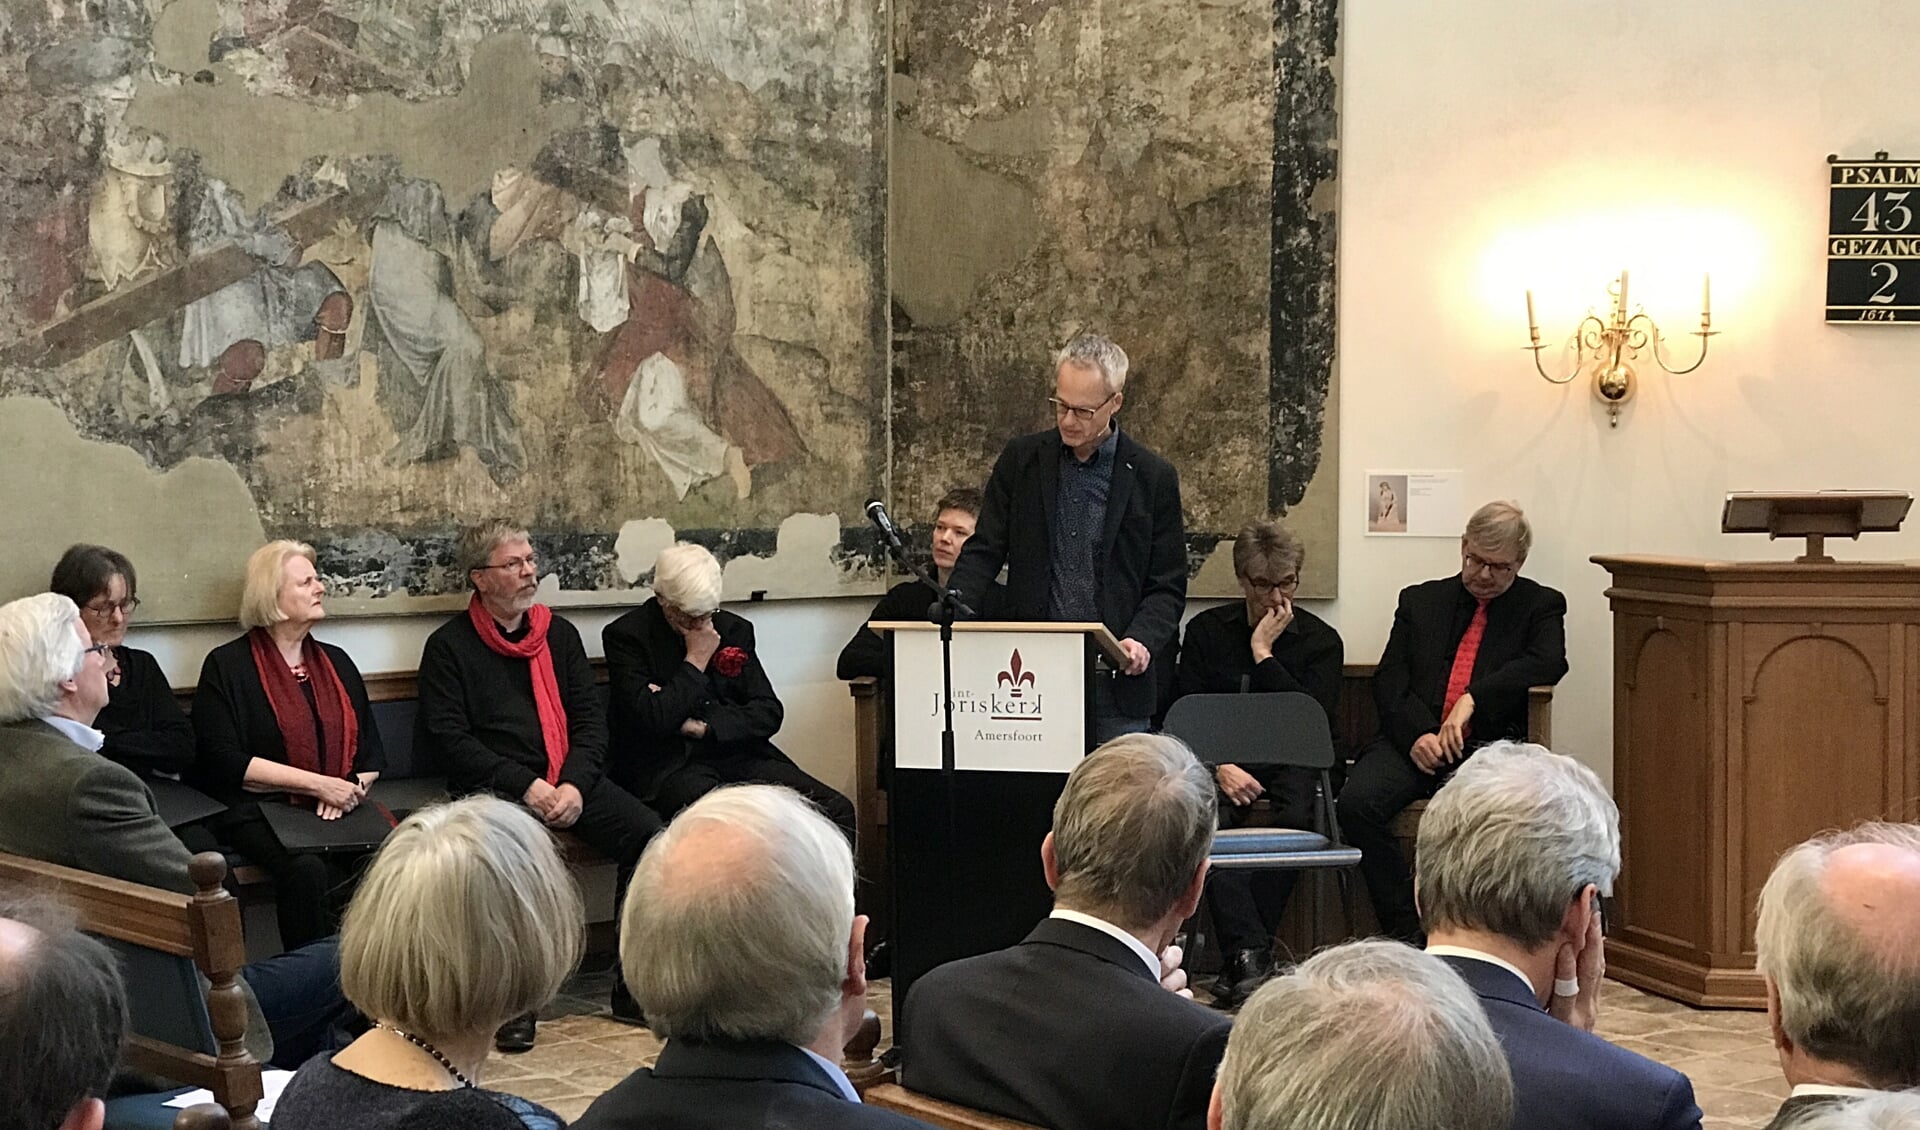 Zaterdagmiddag vond een speciale bijeenkomst rond Johan van Oldenbarnevelt plaats in de Sint-Joriskerk in Amersfoort. Minister van Staat, Piet Hein Donner, was hierbij aanwezig. 